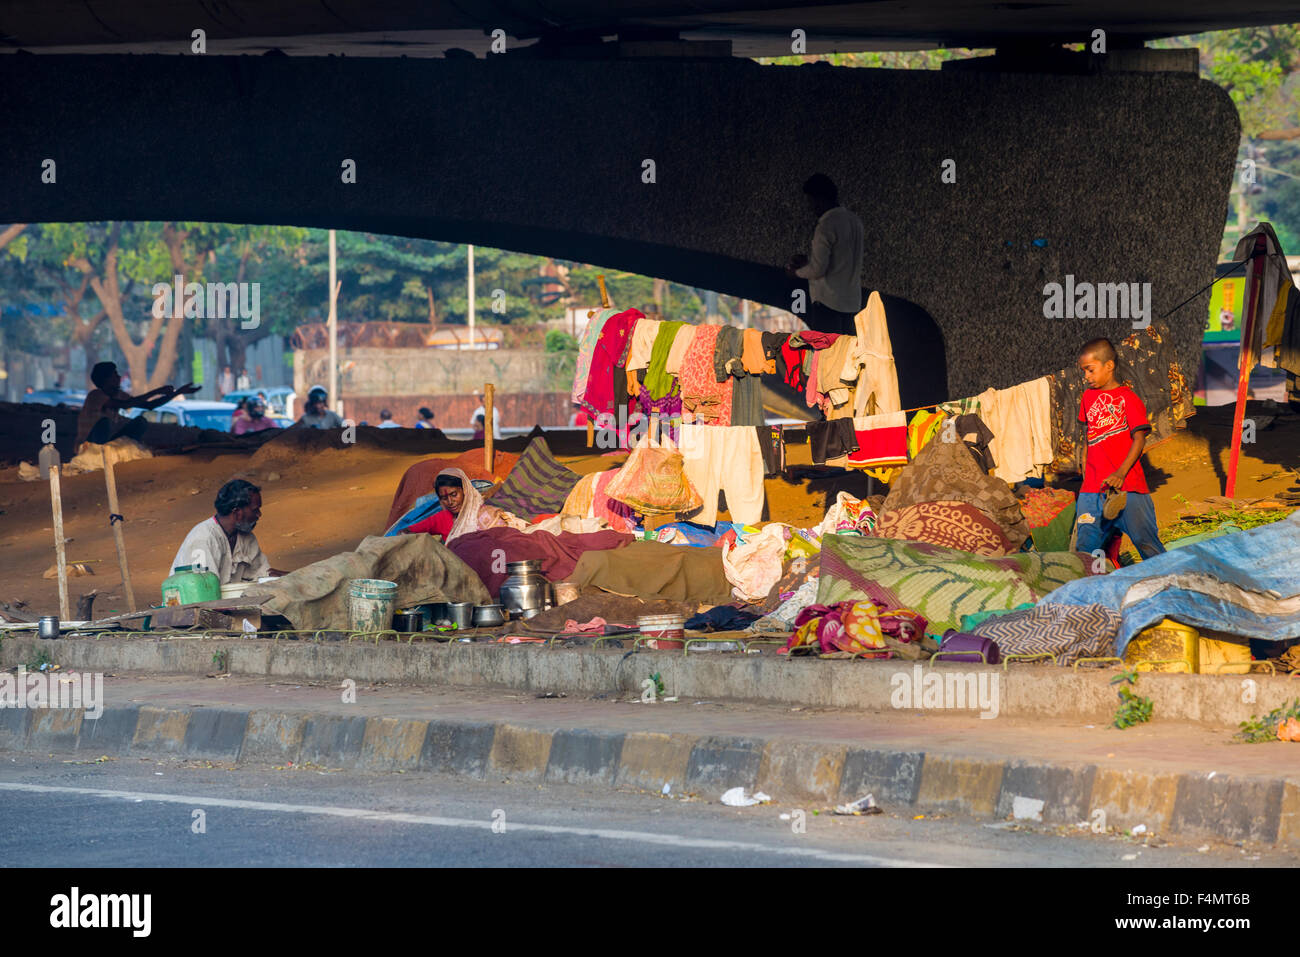 Las personas están viviendo bajo condiciones extrem en tiendas y chozas hechas de mantas en puentes de carretera Foto de stock